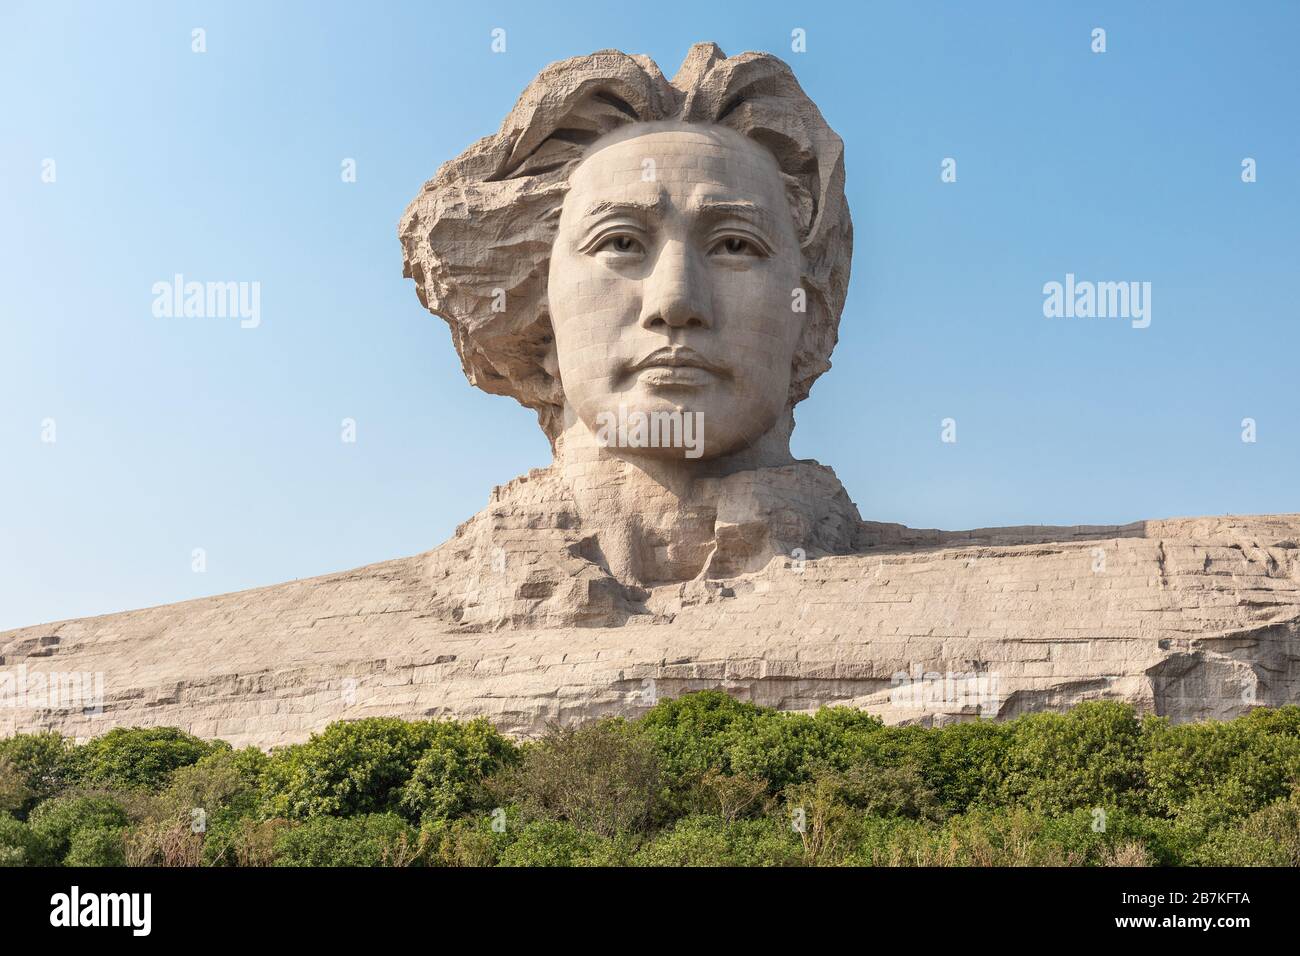 --FILE--la escultura del presidente Mao Zedong en su juventud se ve en la Isla de Orange, una isla y también una atracción turística en el río Xiang, ciudad de Changsha, Cent Foto de stock